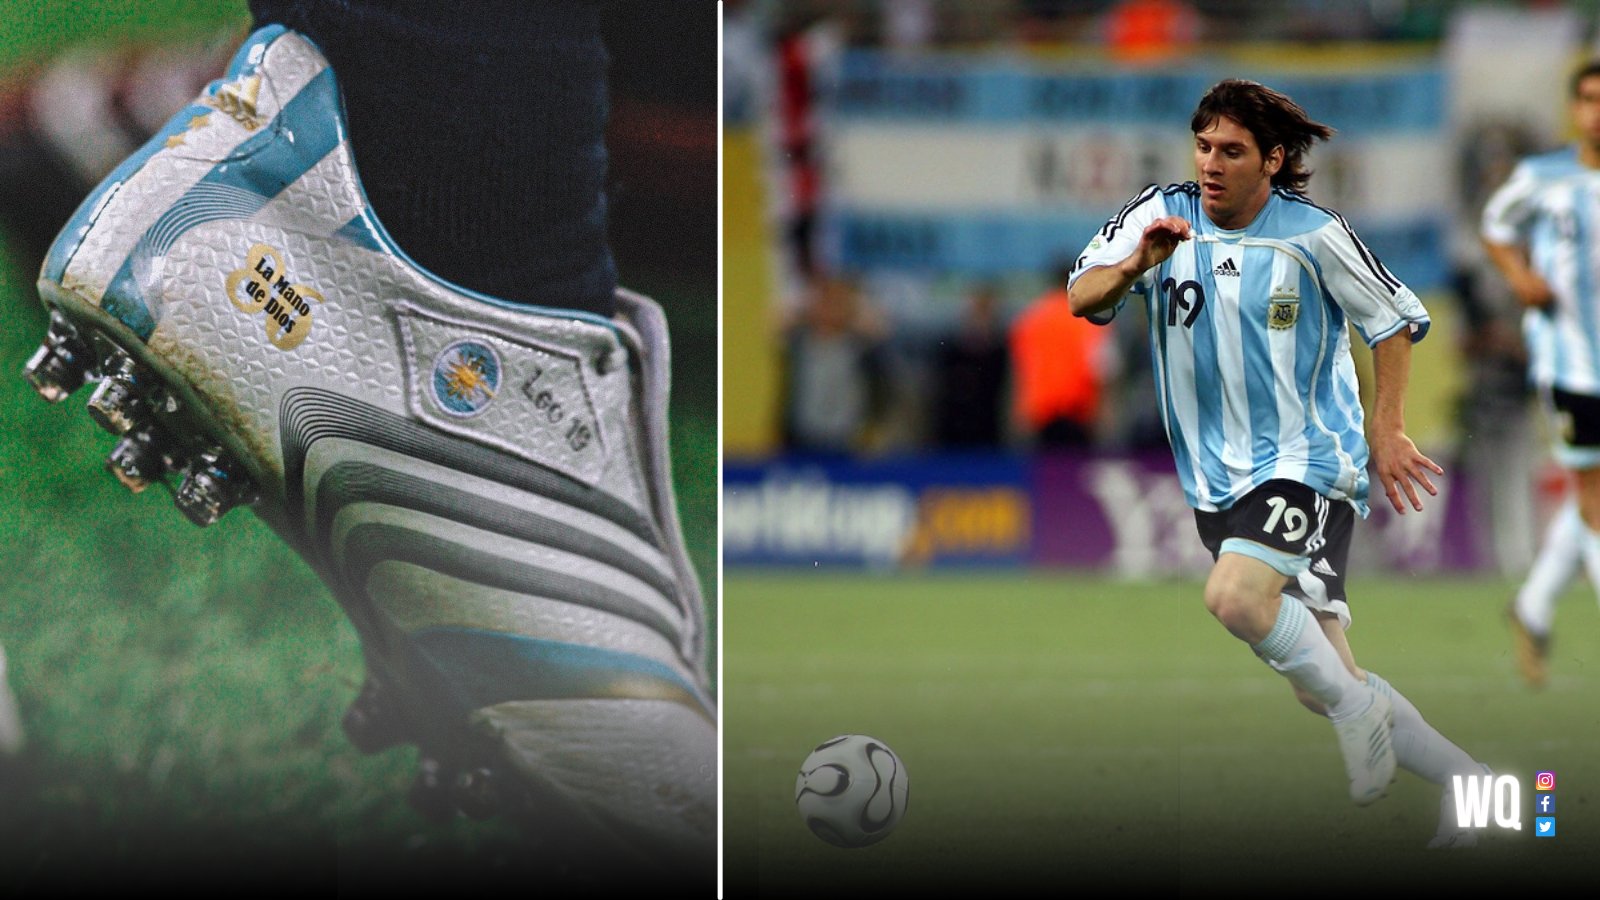 Walter on Twitter: "En el Mundial 2006, Lionel Messi firmó su contrato con Adidas y jugó todo la competencia con unos botines en honor a Maradona. 🔟 "La mano de